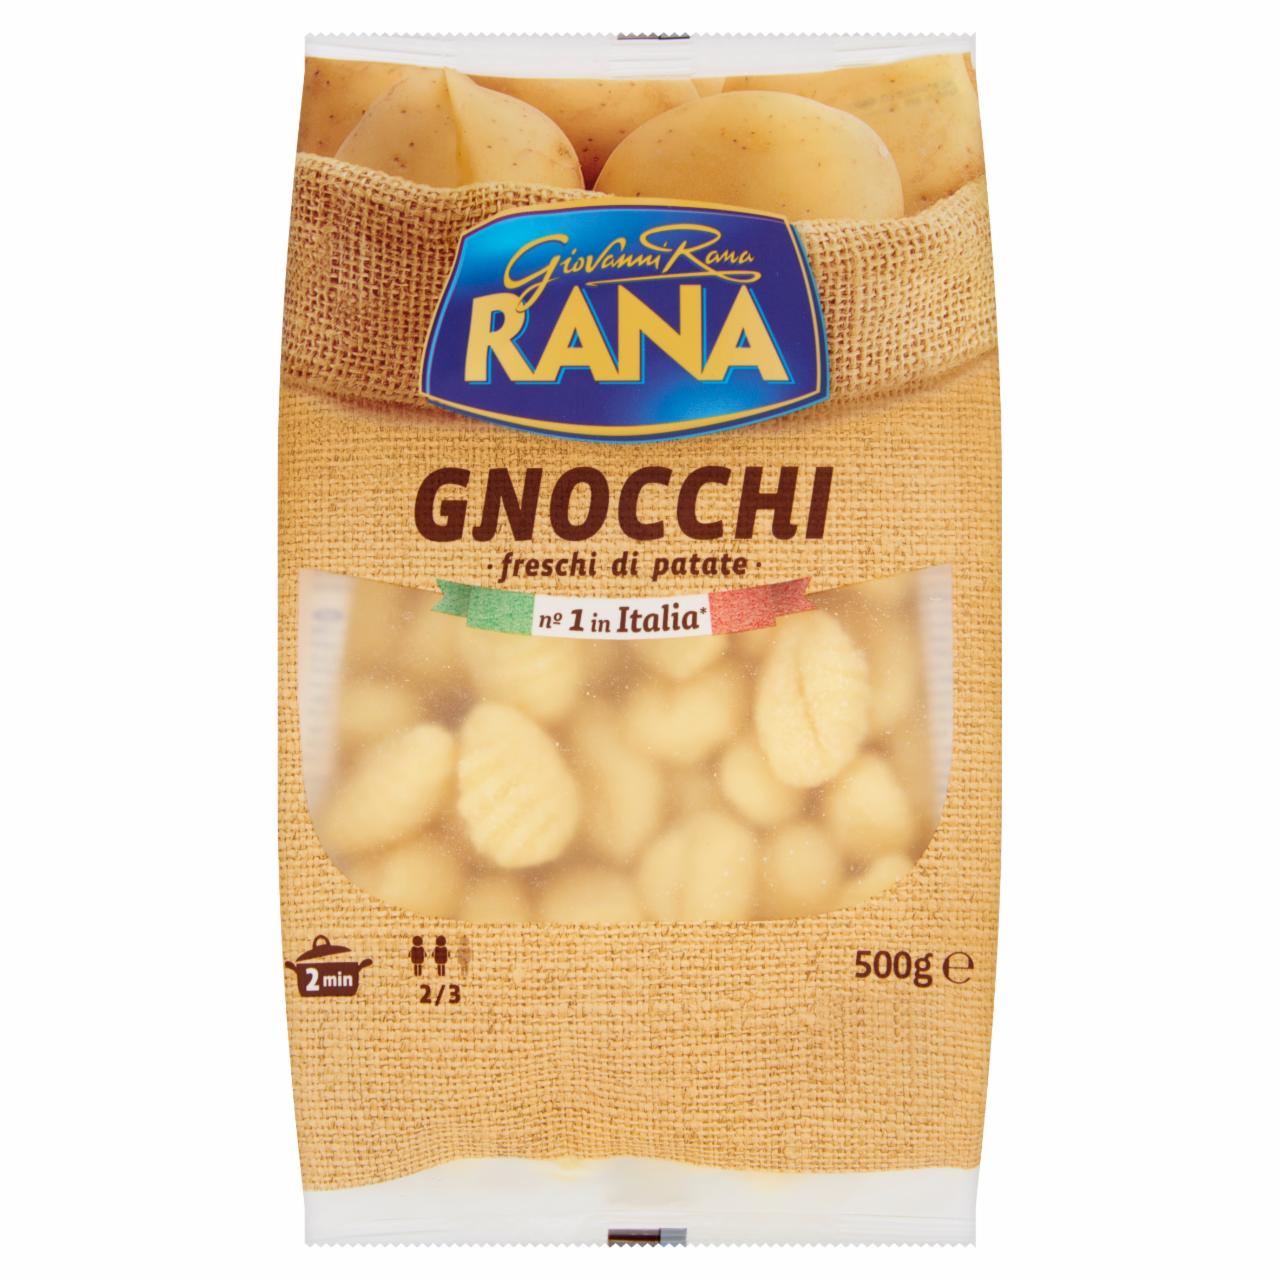 Képek - Gnocchi Rana